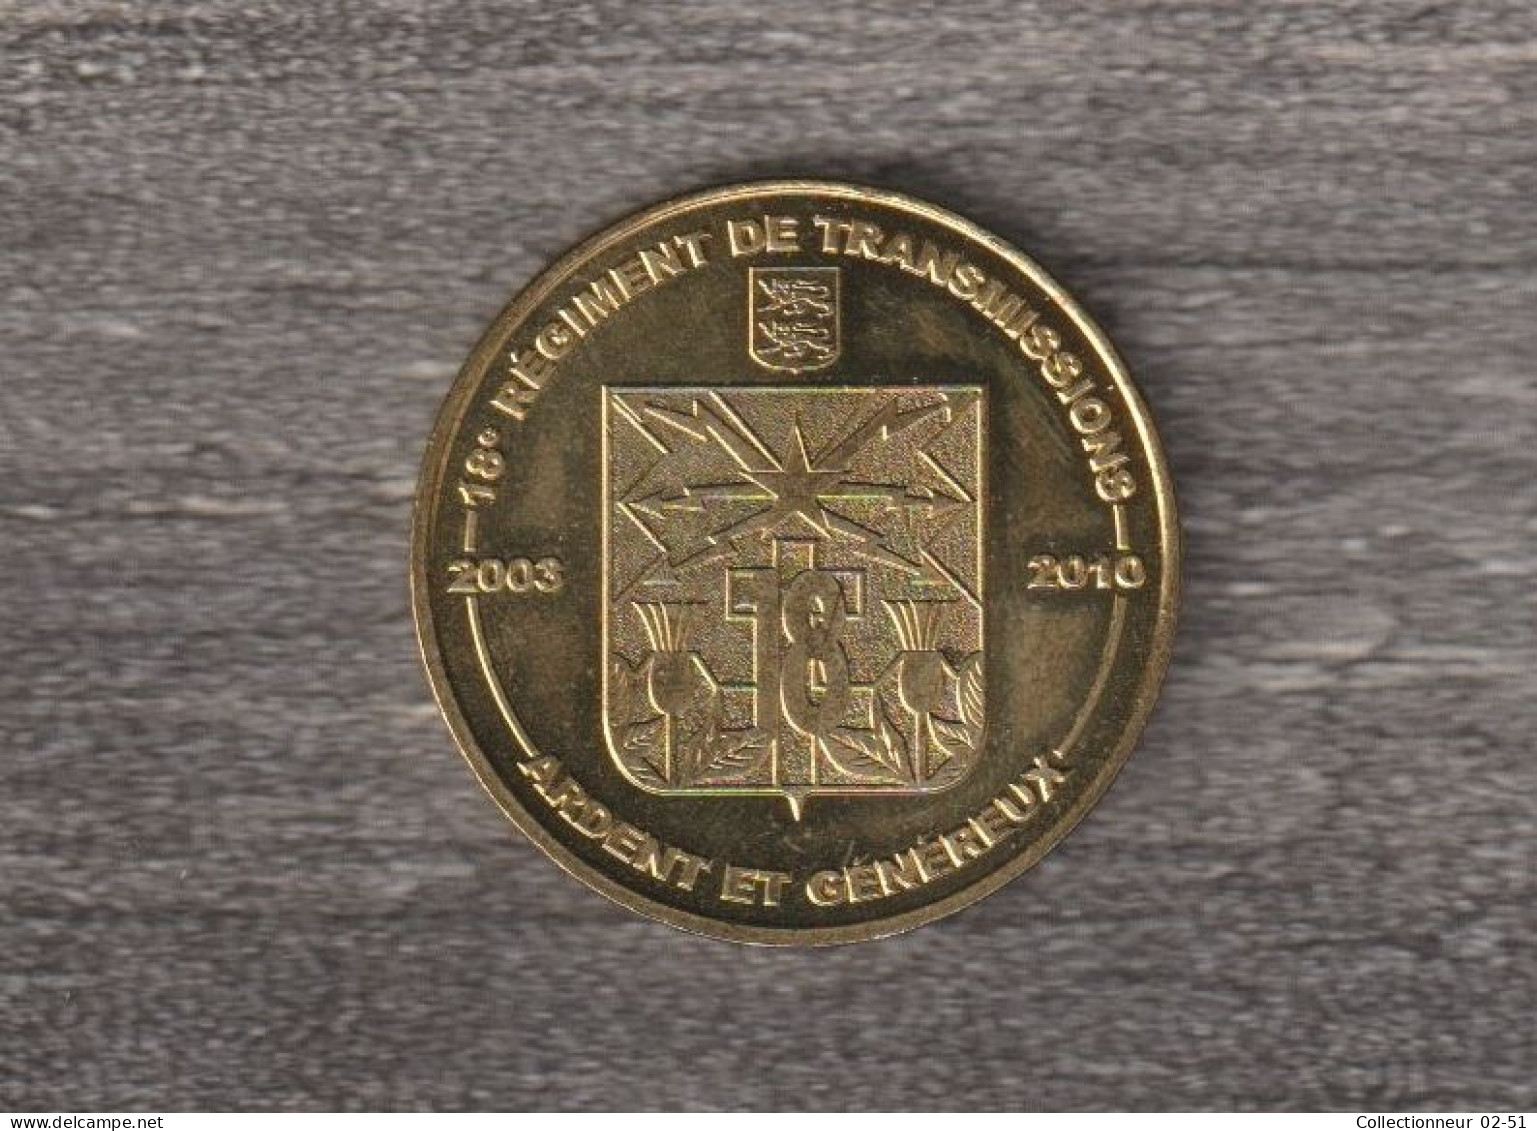 Monnaie De Paris : 18ème Régiment De Transmissions - 2009 - 2009